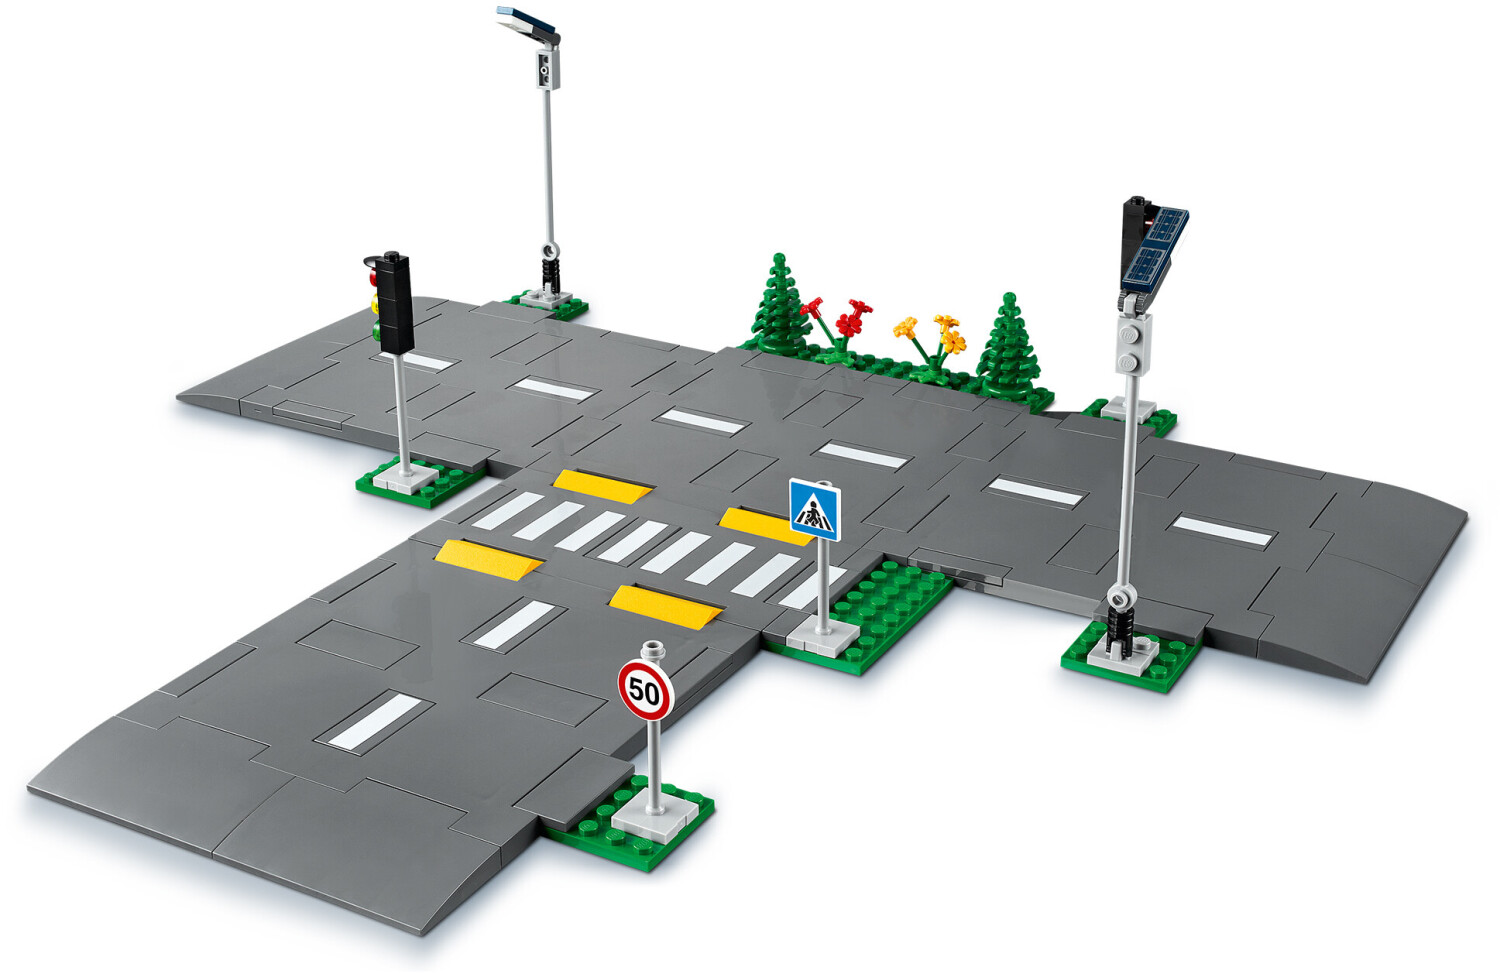 LEGO City 60304 - Intersection à assembler pas cher 